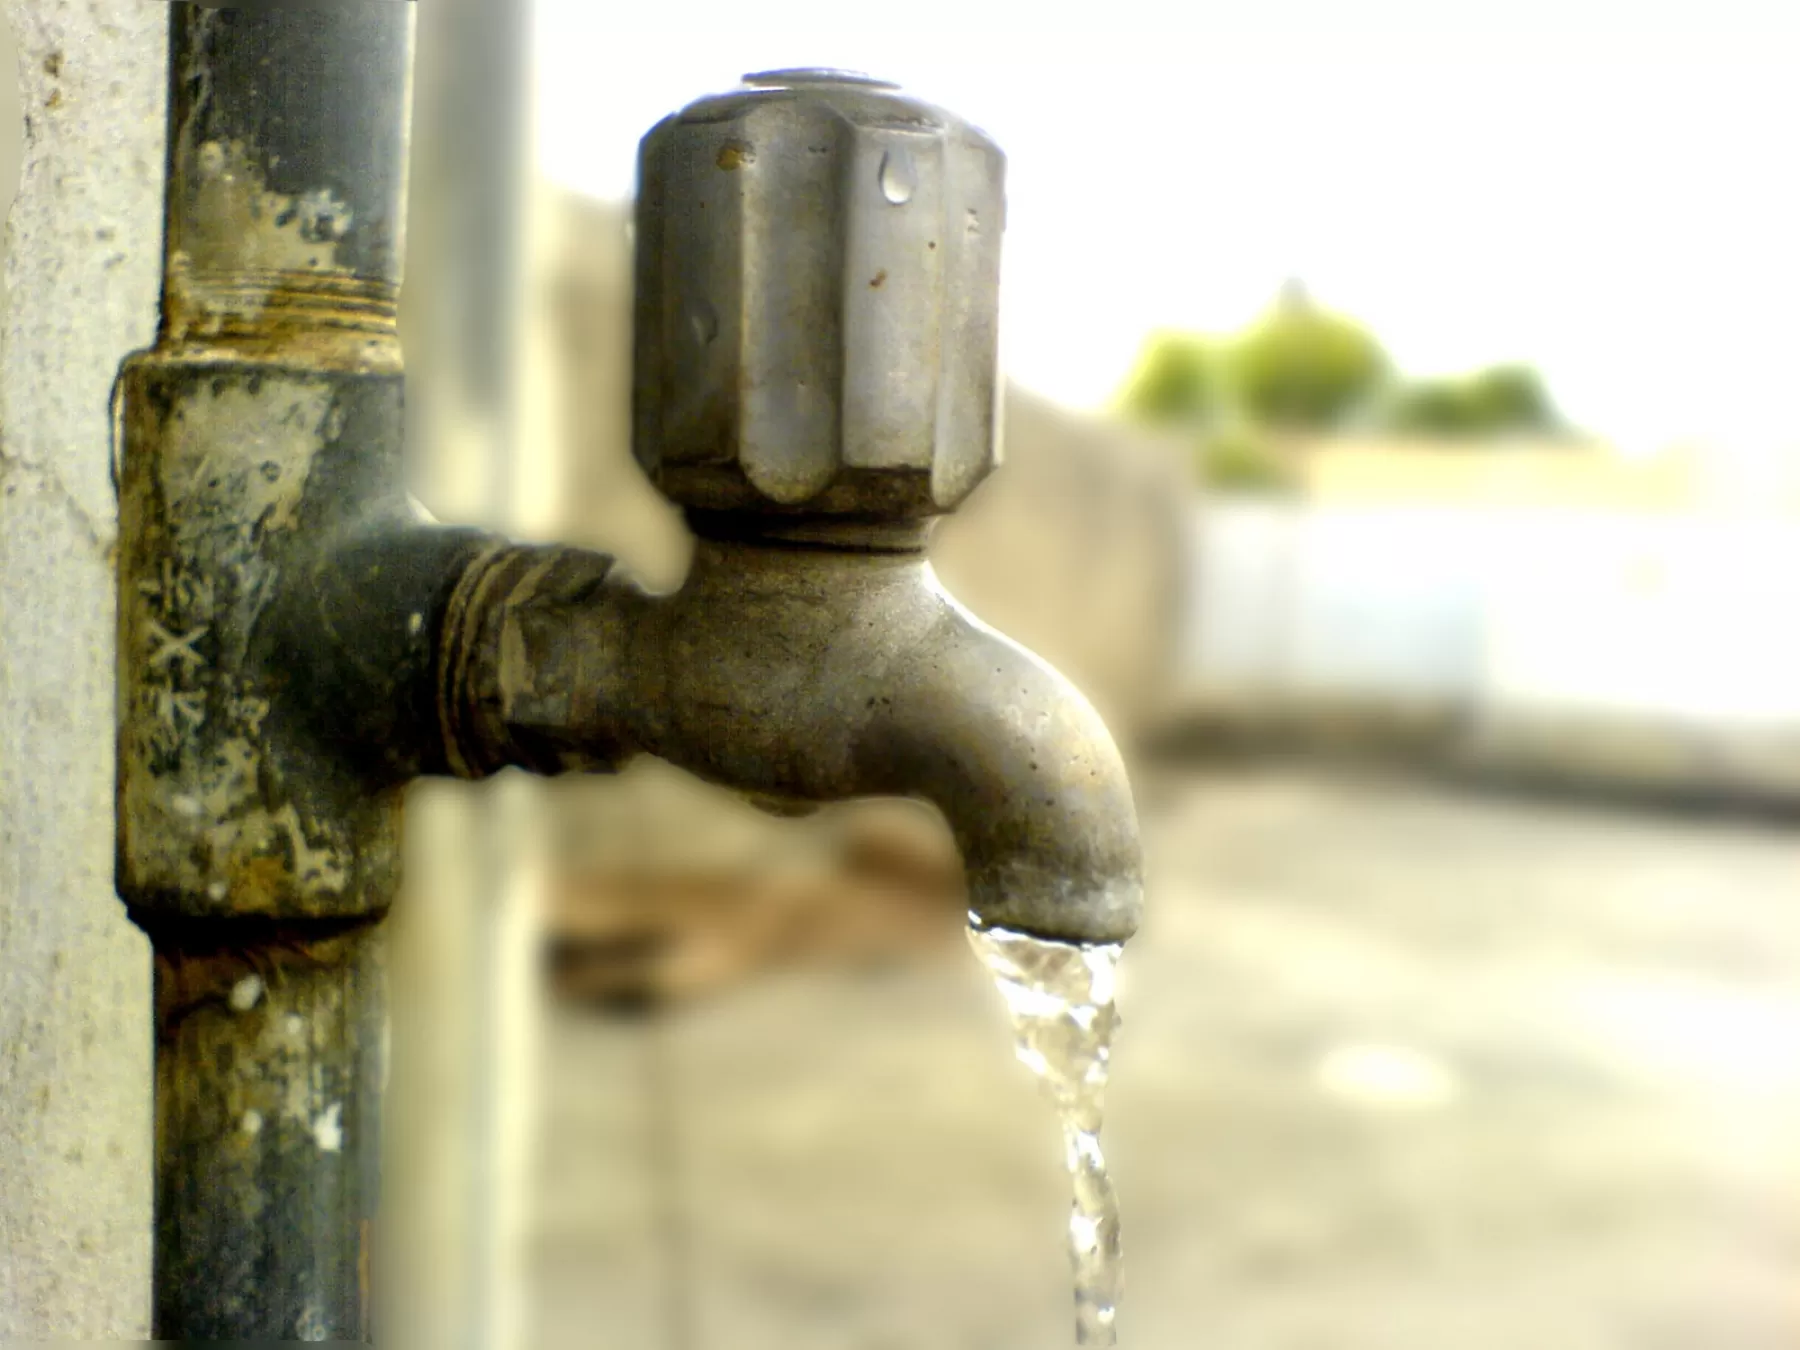 La Empresa de Acueducto y Alcantarillado de Villavicencio (EAAV) normalizó el suministro de agua potable en la ciudad de Villavicencio.